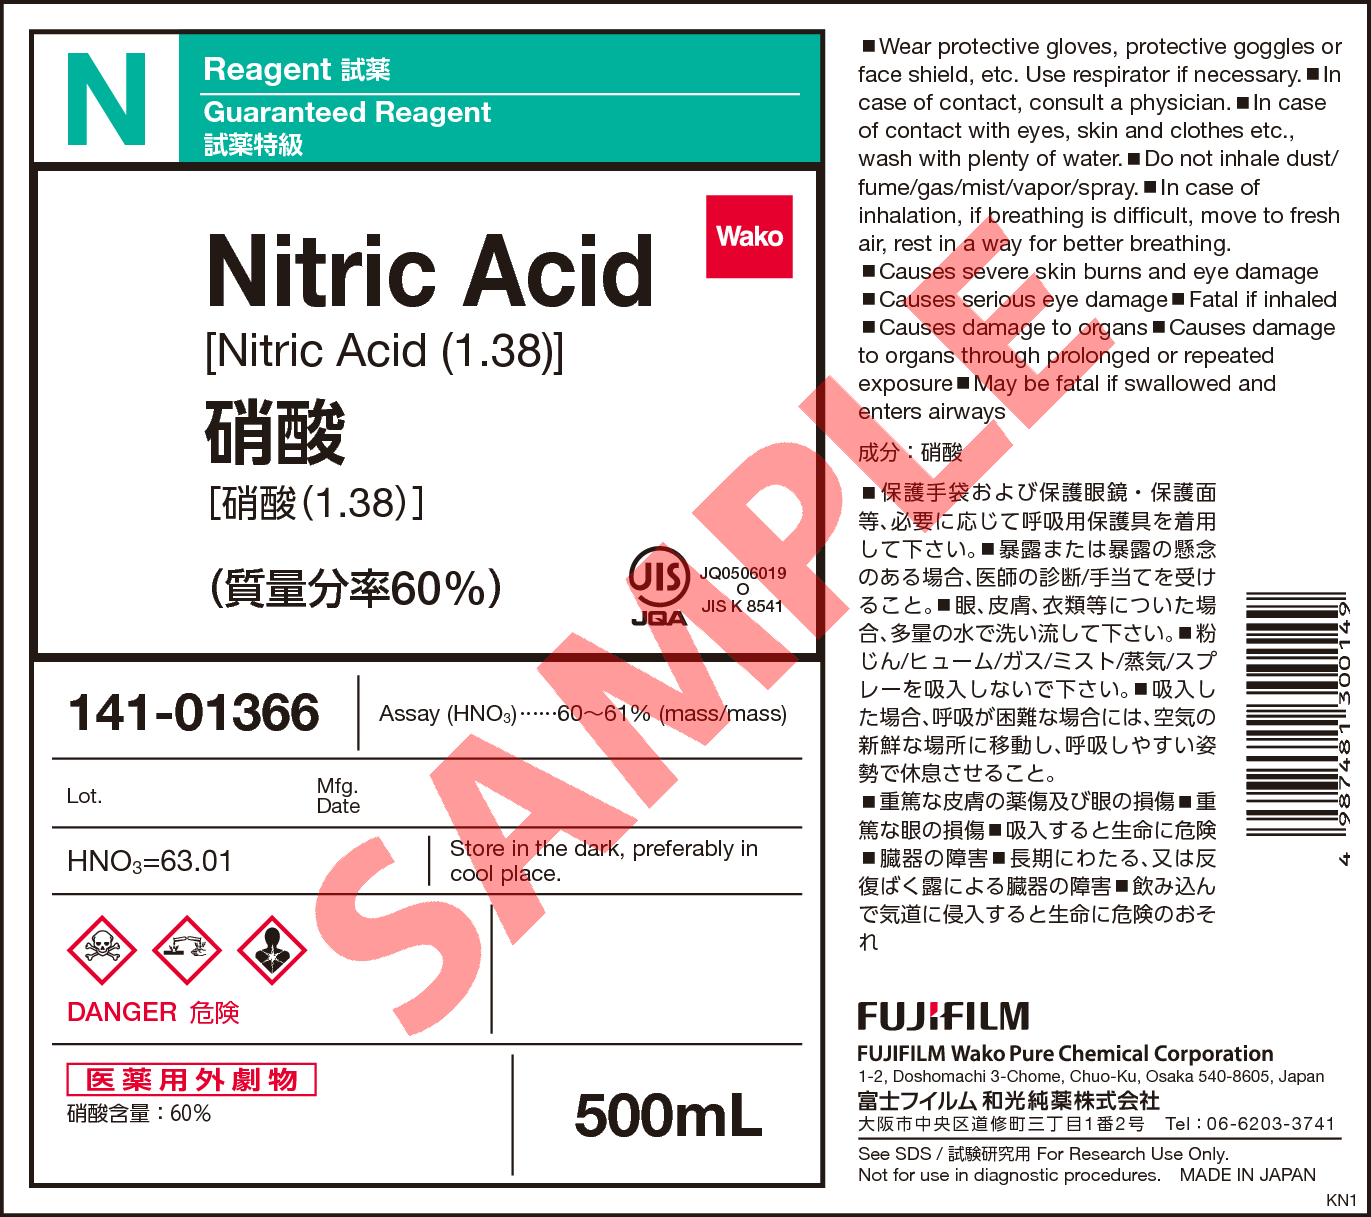 7697-37-2・硝酸 (1.38)・Nitric Acid (1.38)・141-01361・149-01367 